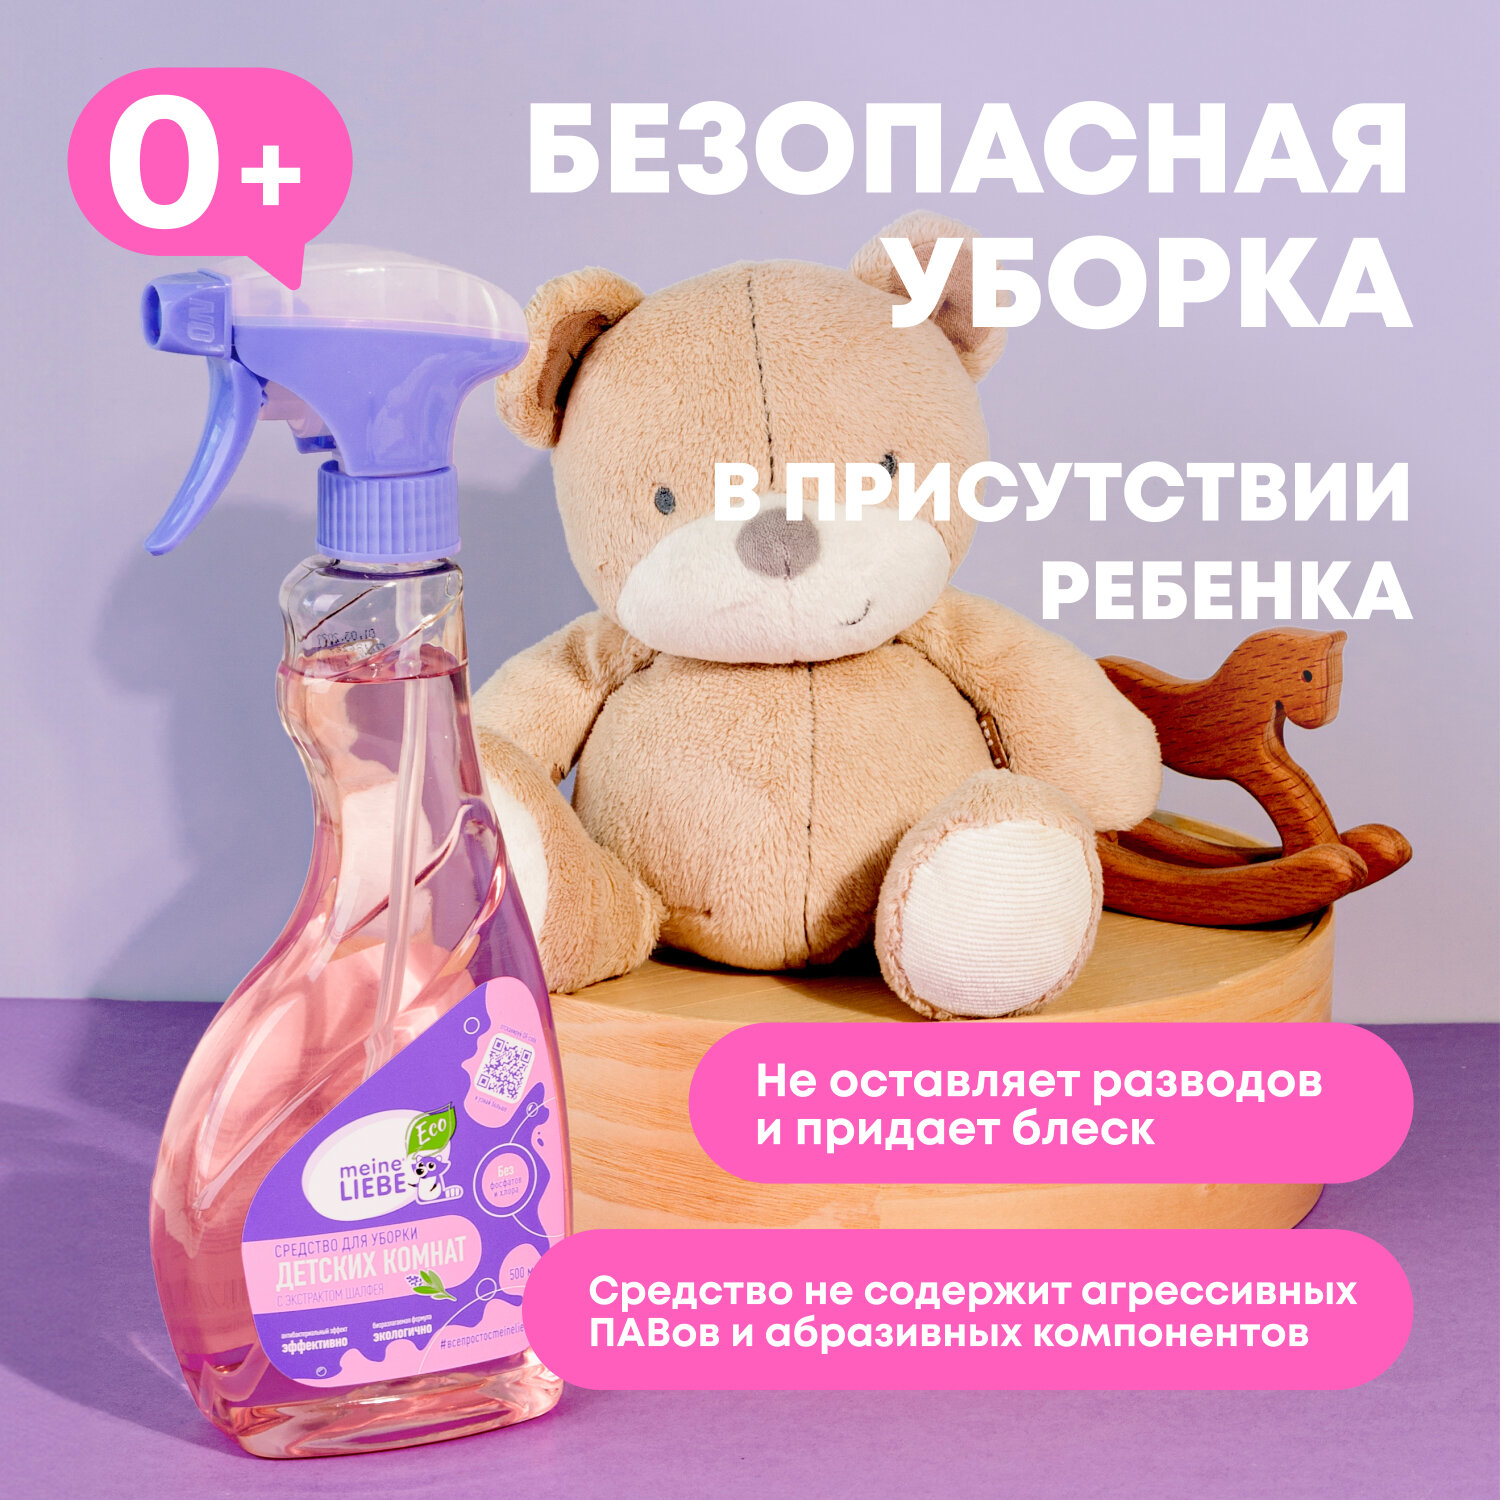 Средство Meine Liebe для уборки детских помещений с Антибактериальным эффектом, 500 мл - фото №3